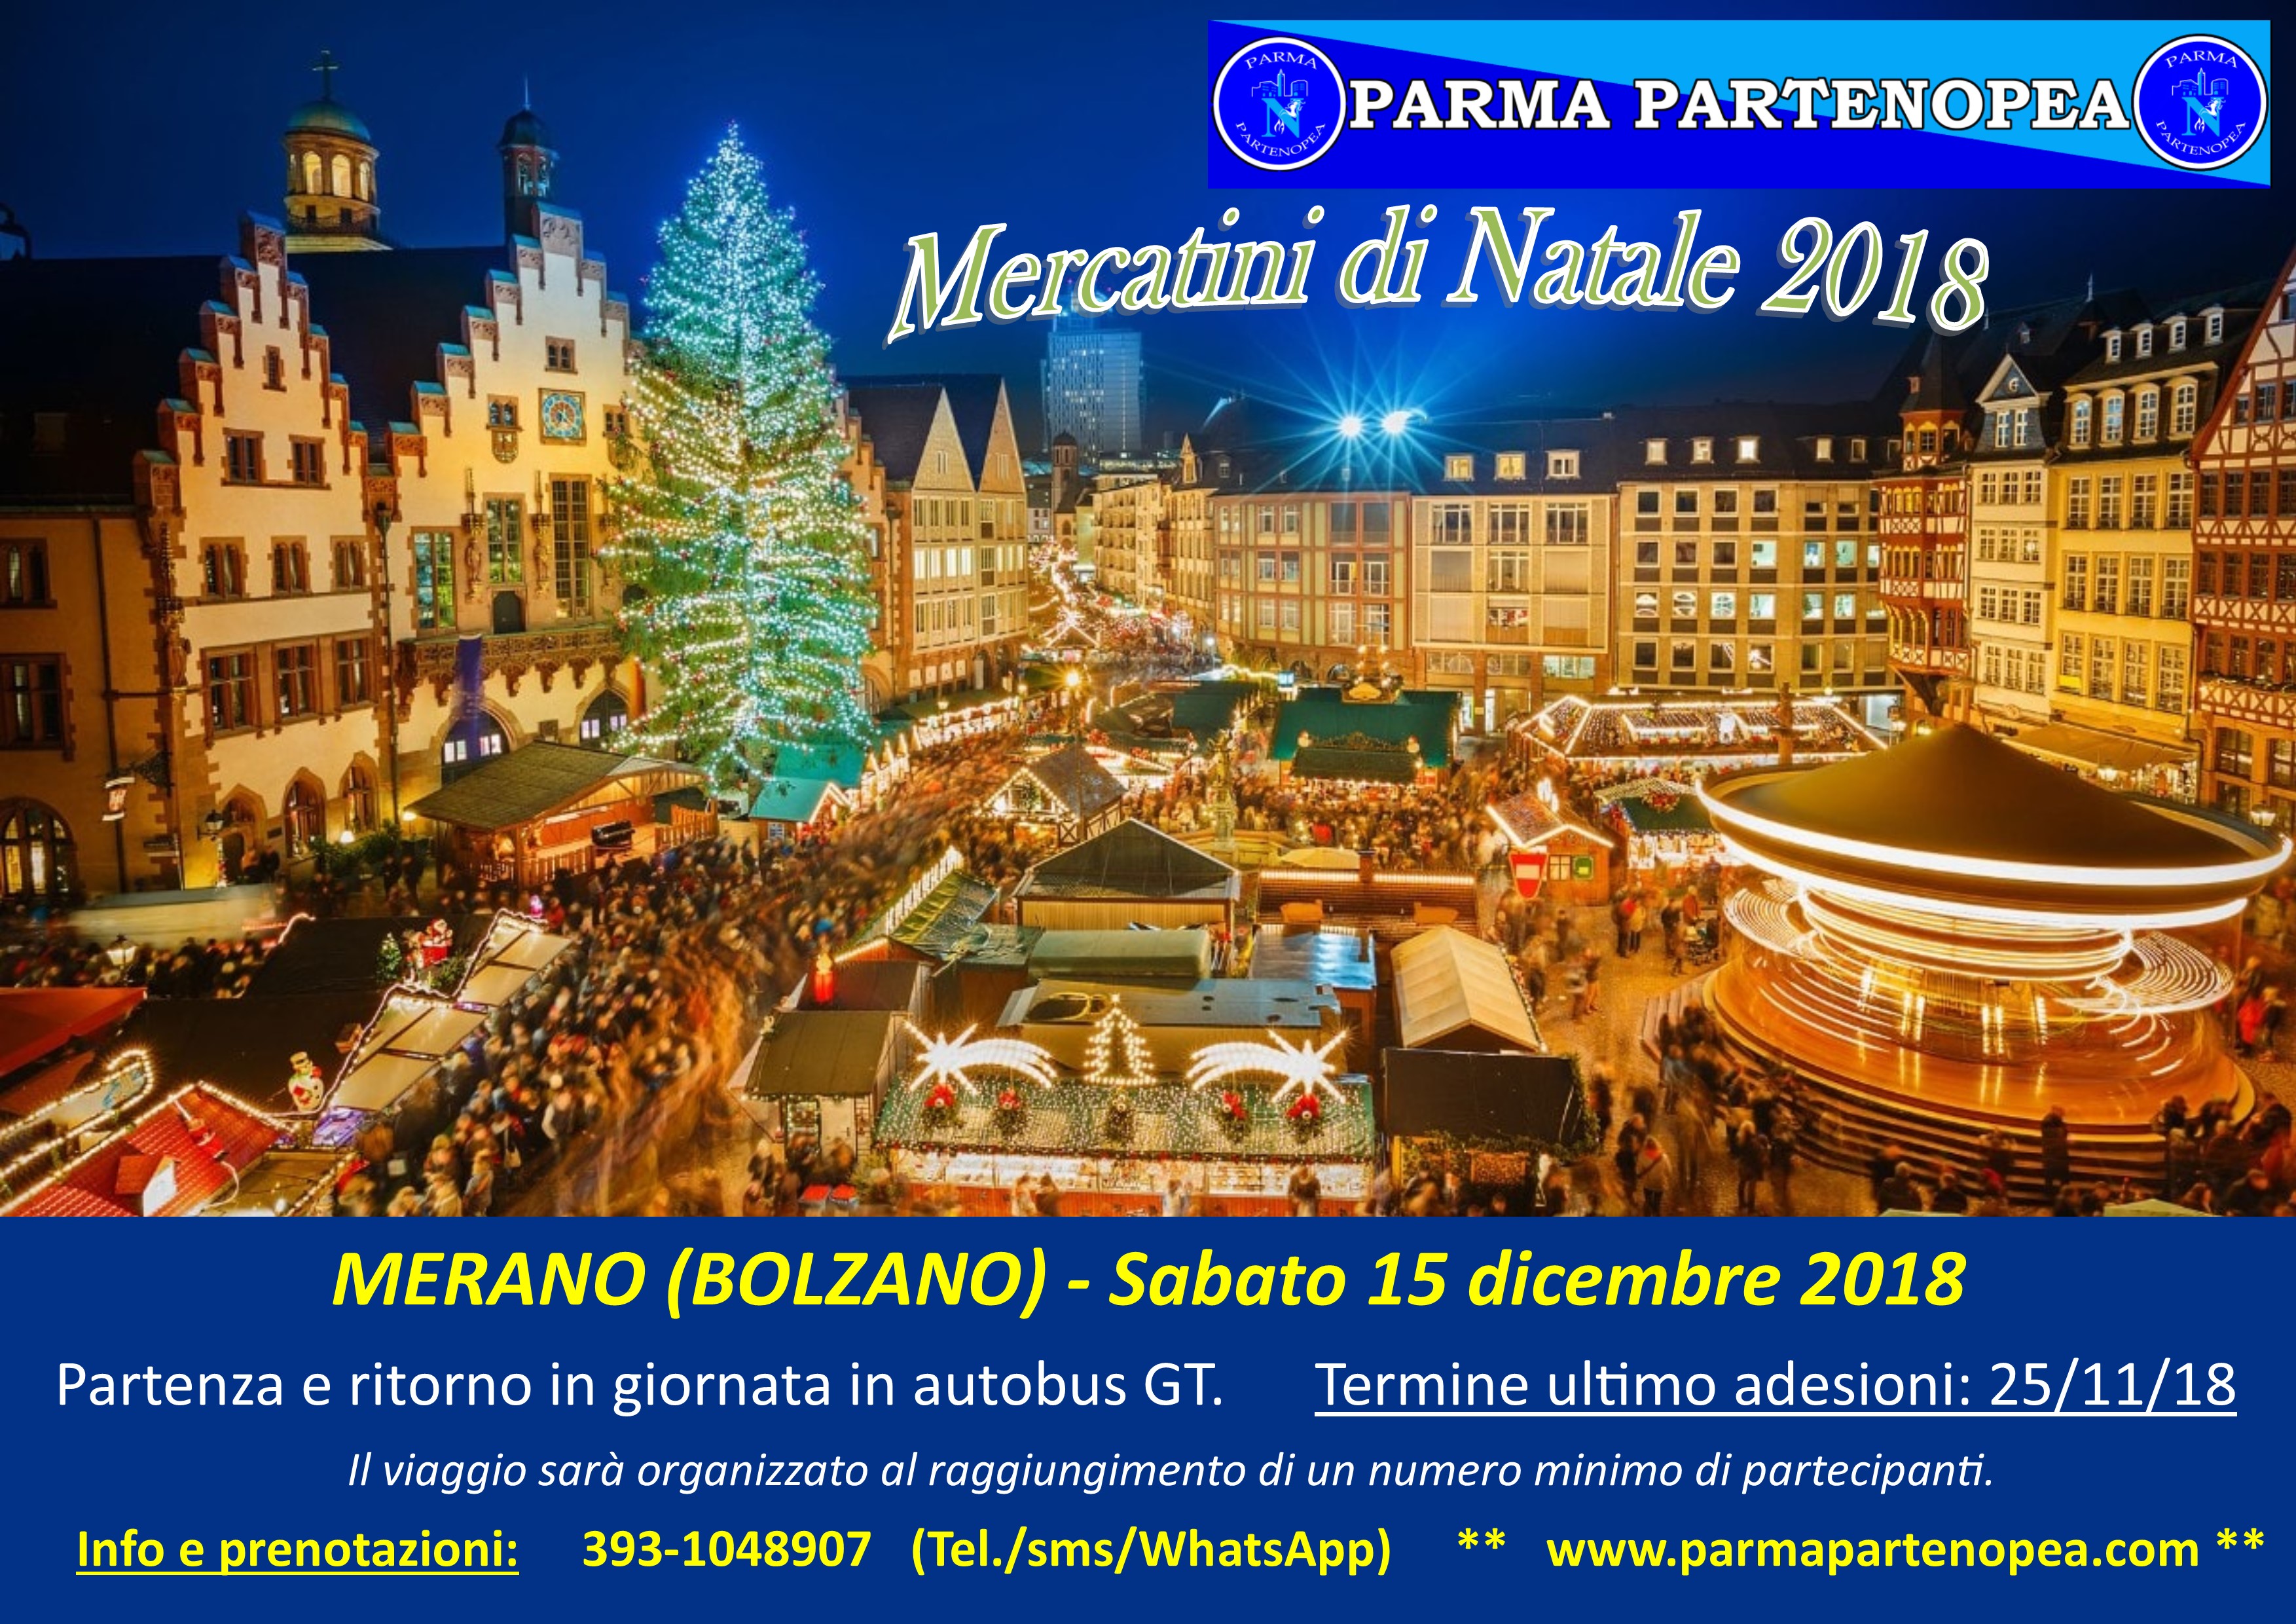 Mercatini Di Natale Merano.Mercatini Di Natale 2018 A Merano Bolzano Con Parma Partenopea Sabato 15 Dicembre 2018 Parma Partenopea